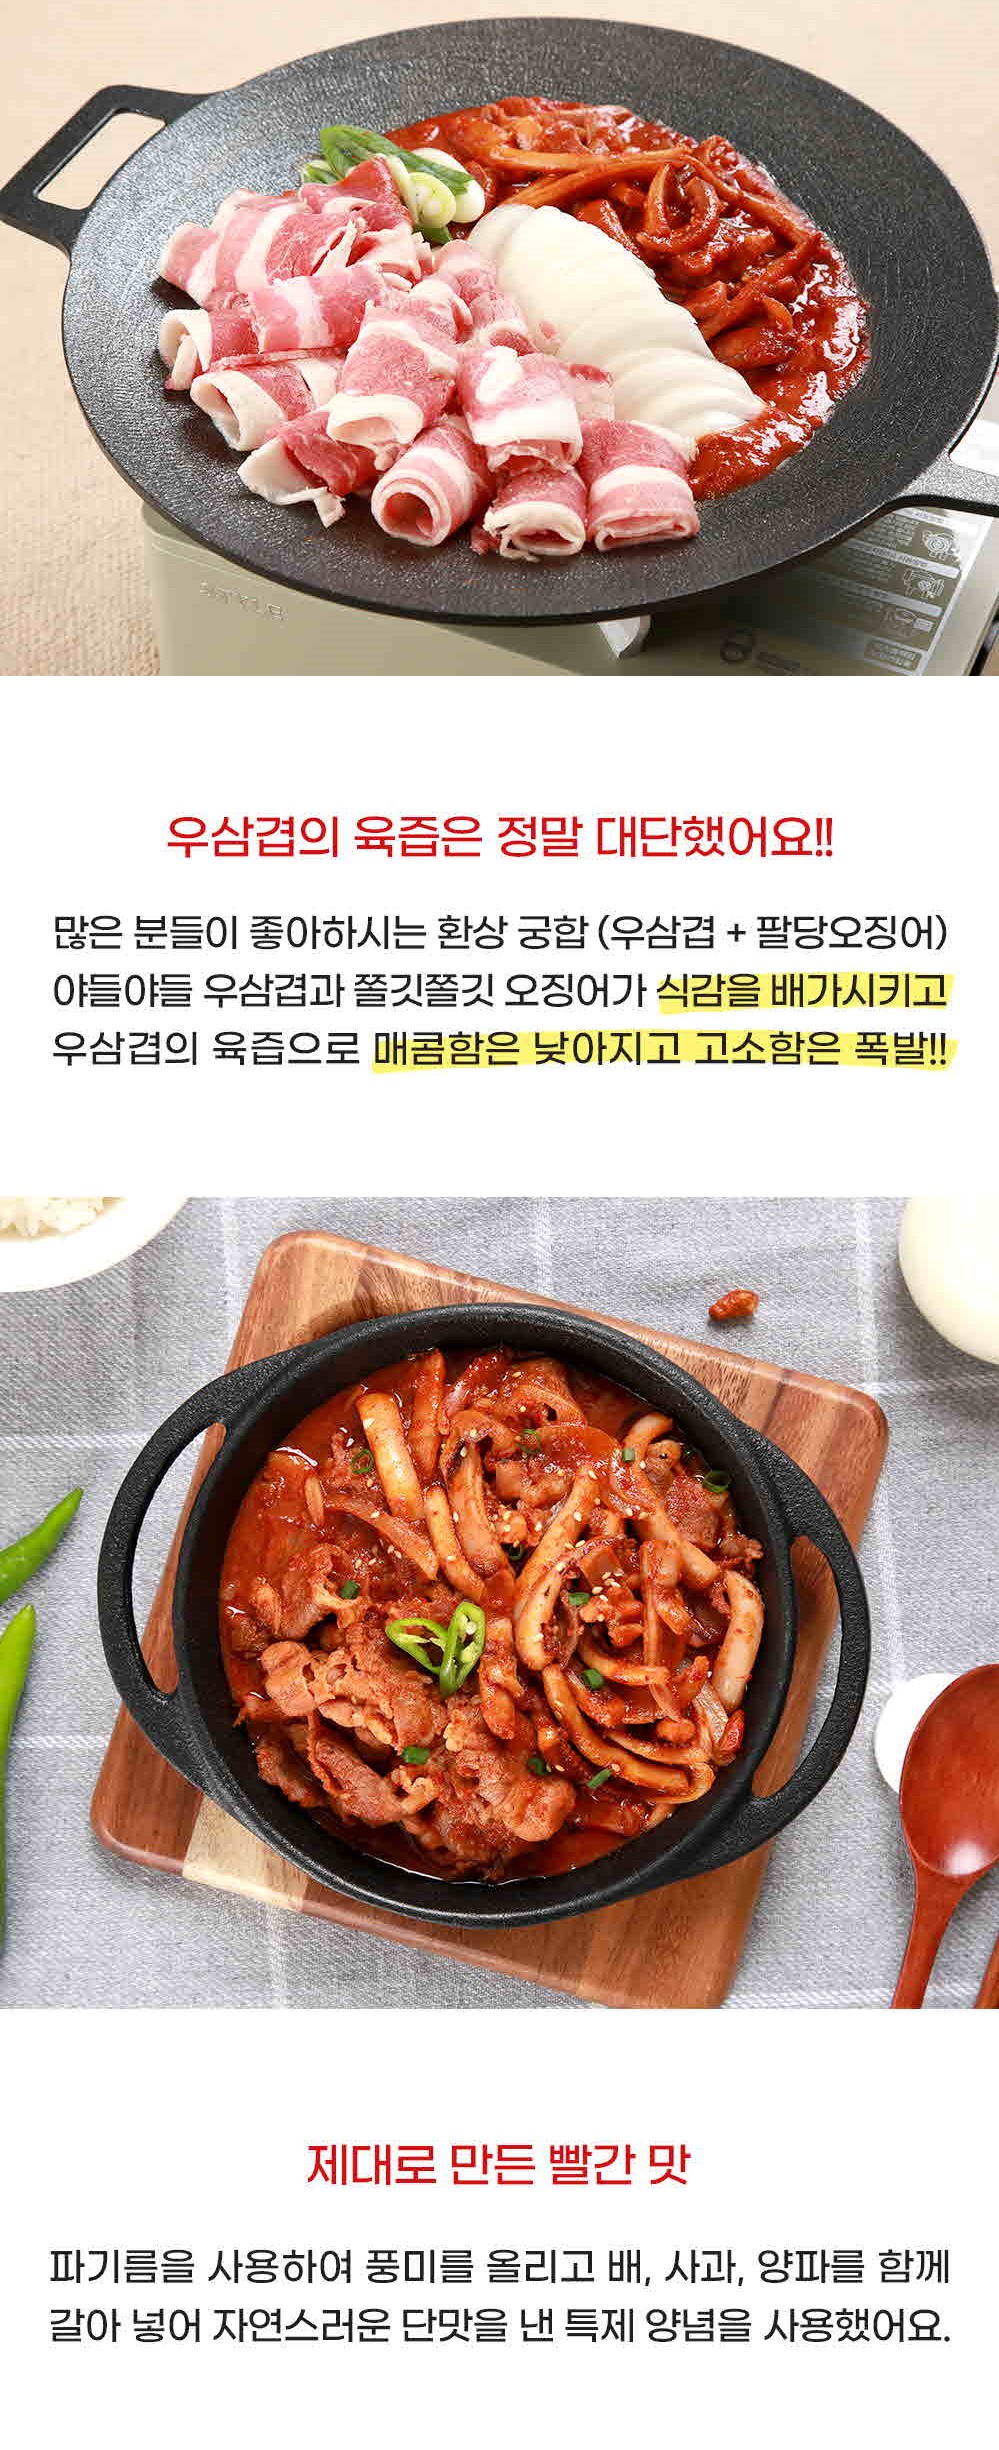 韓國食品-[Meallylab] 辣炒牛五花肉魷魚 430g